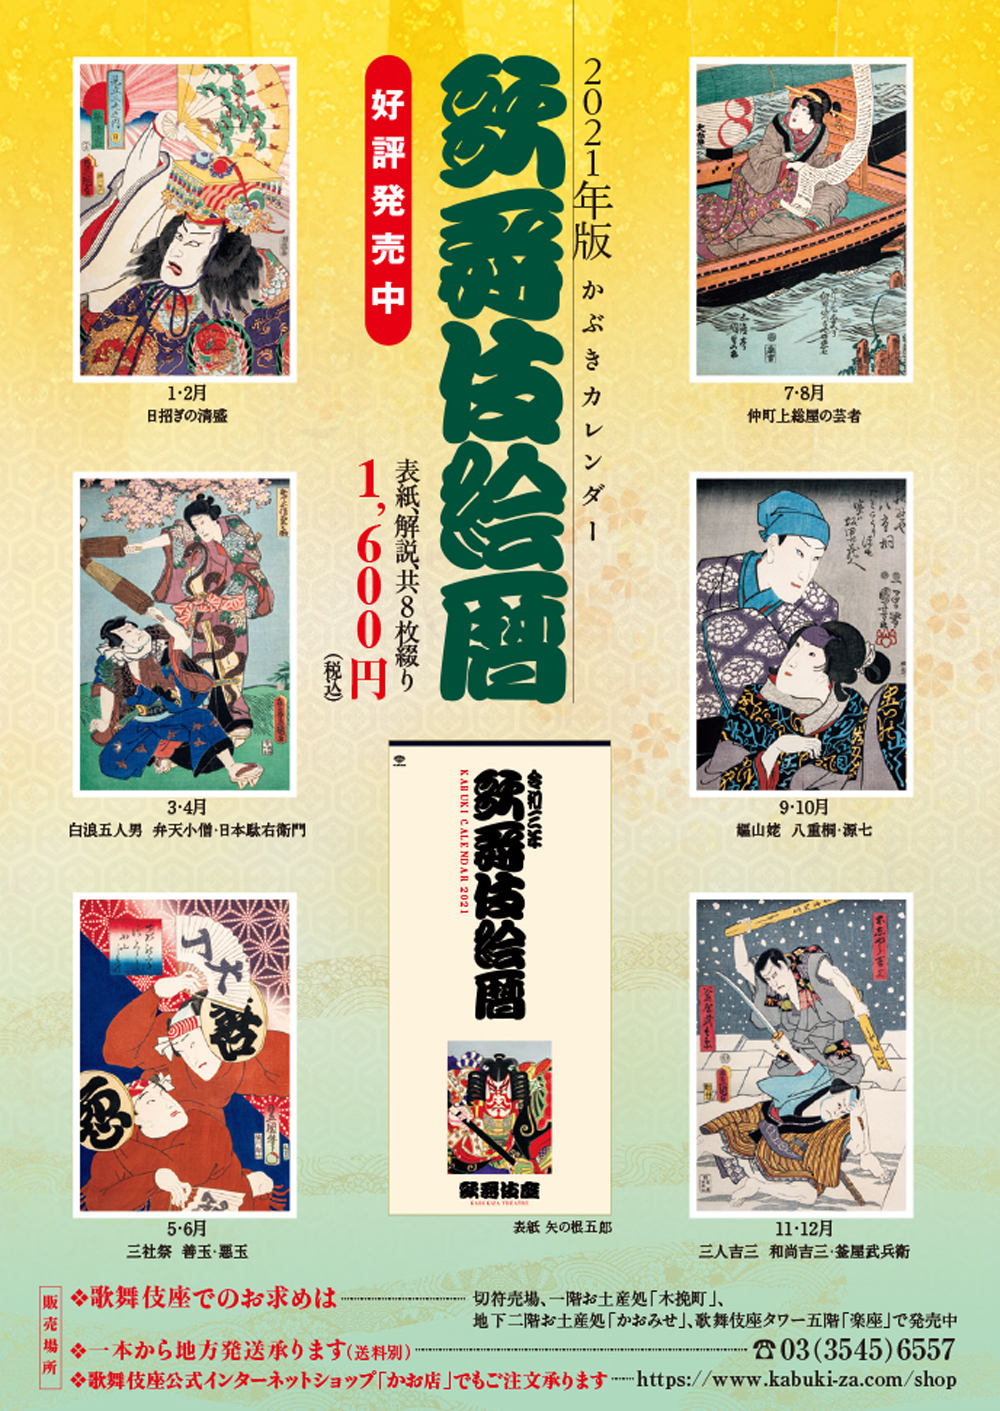 2021年版かぶきカレンダー「歌舞伎絵暦」